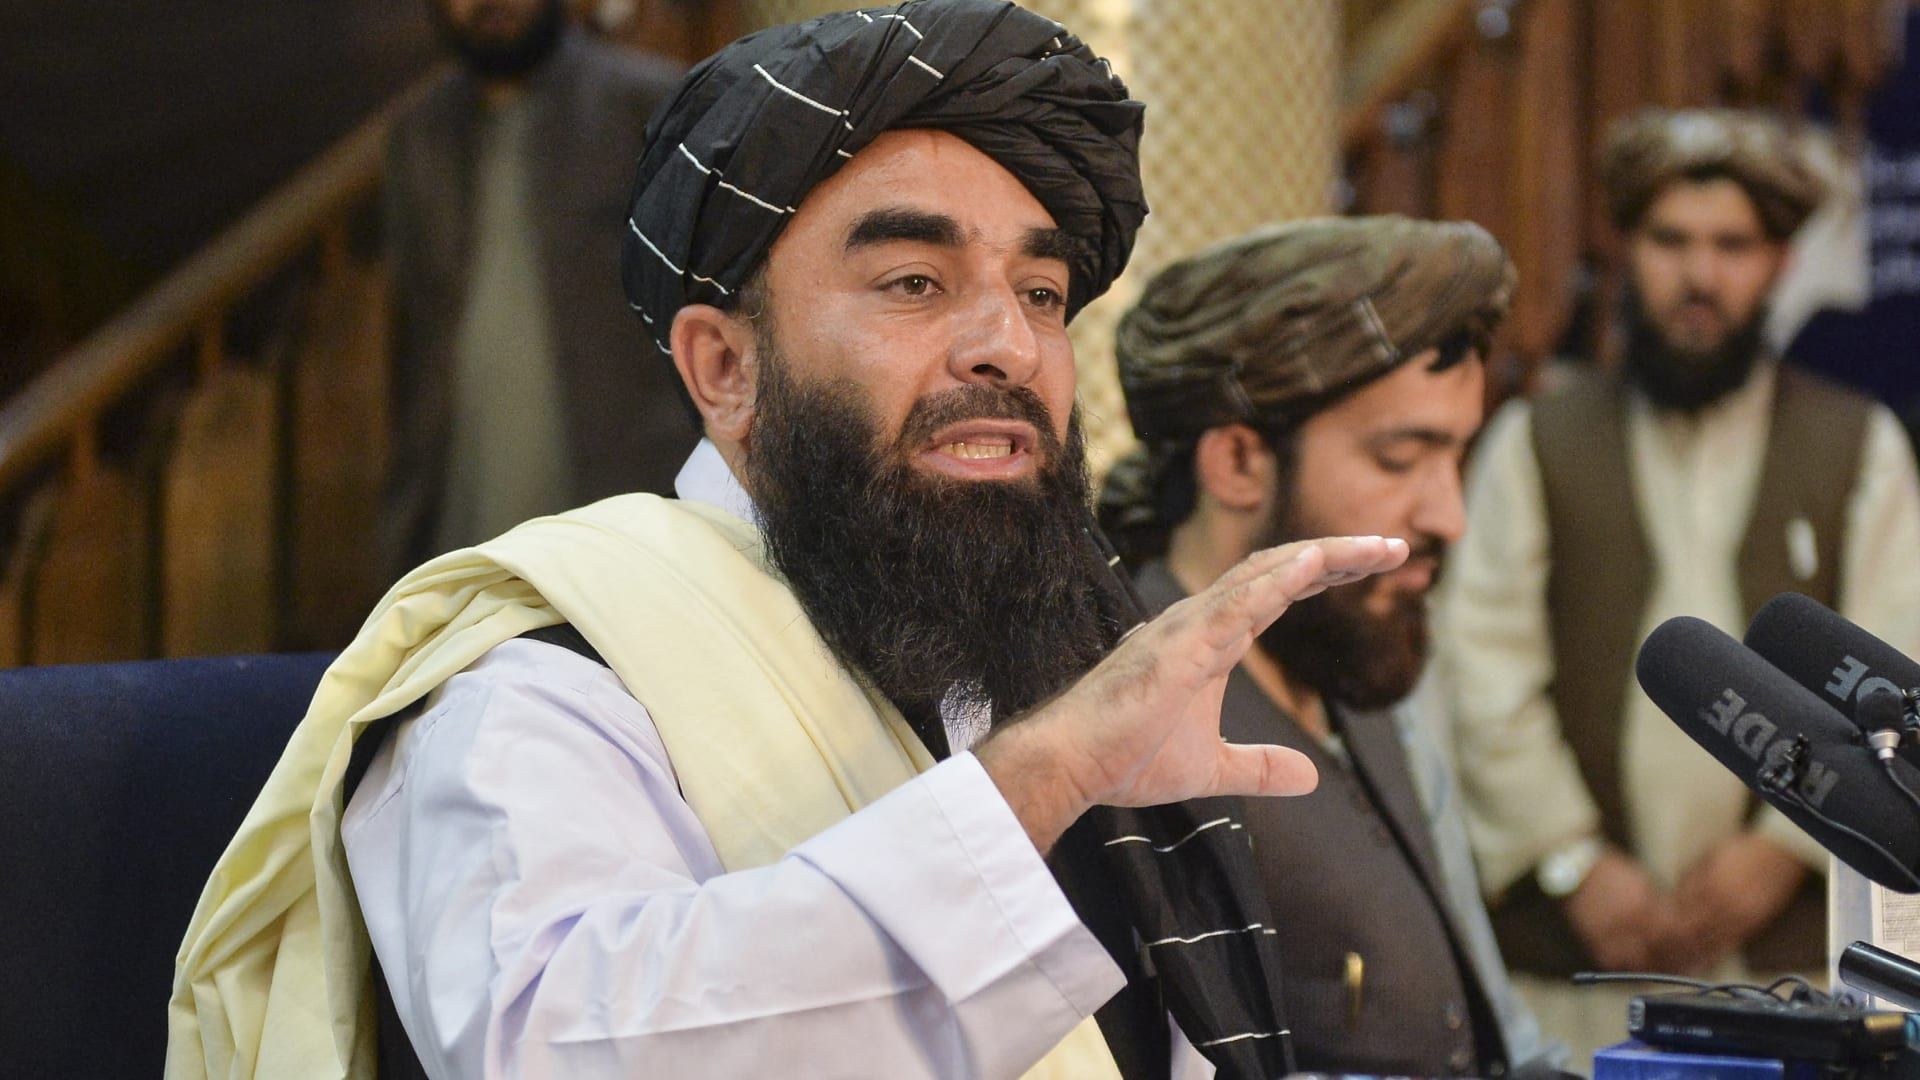 المتحدث باسم طالبان ذبيح الله مجاهد